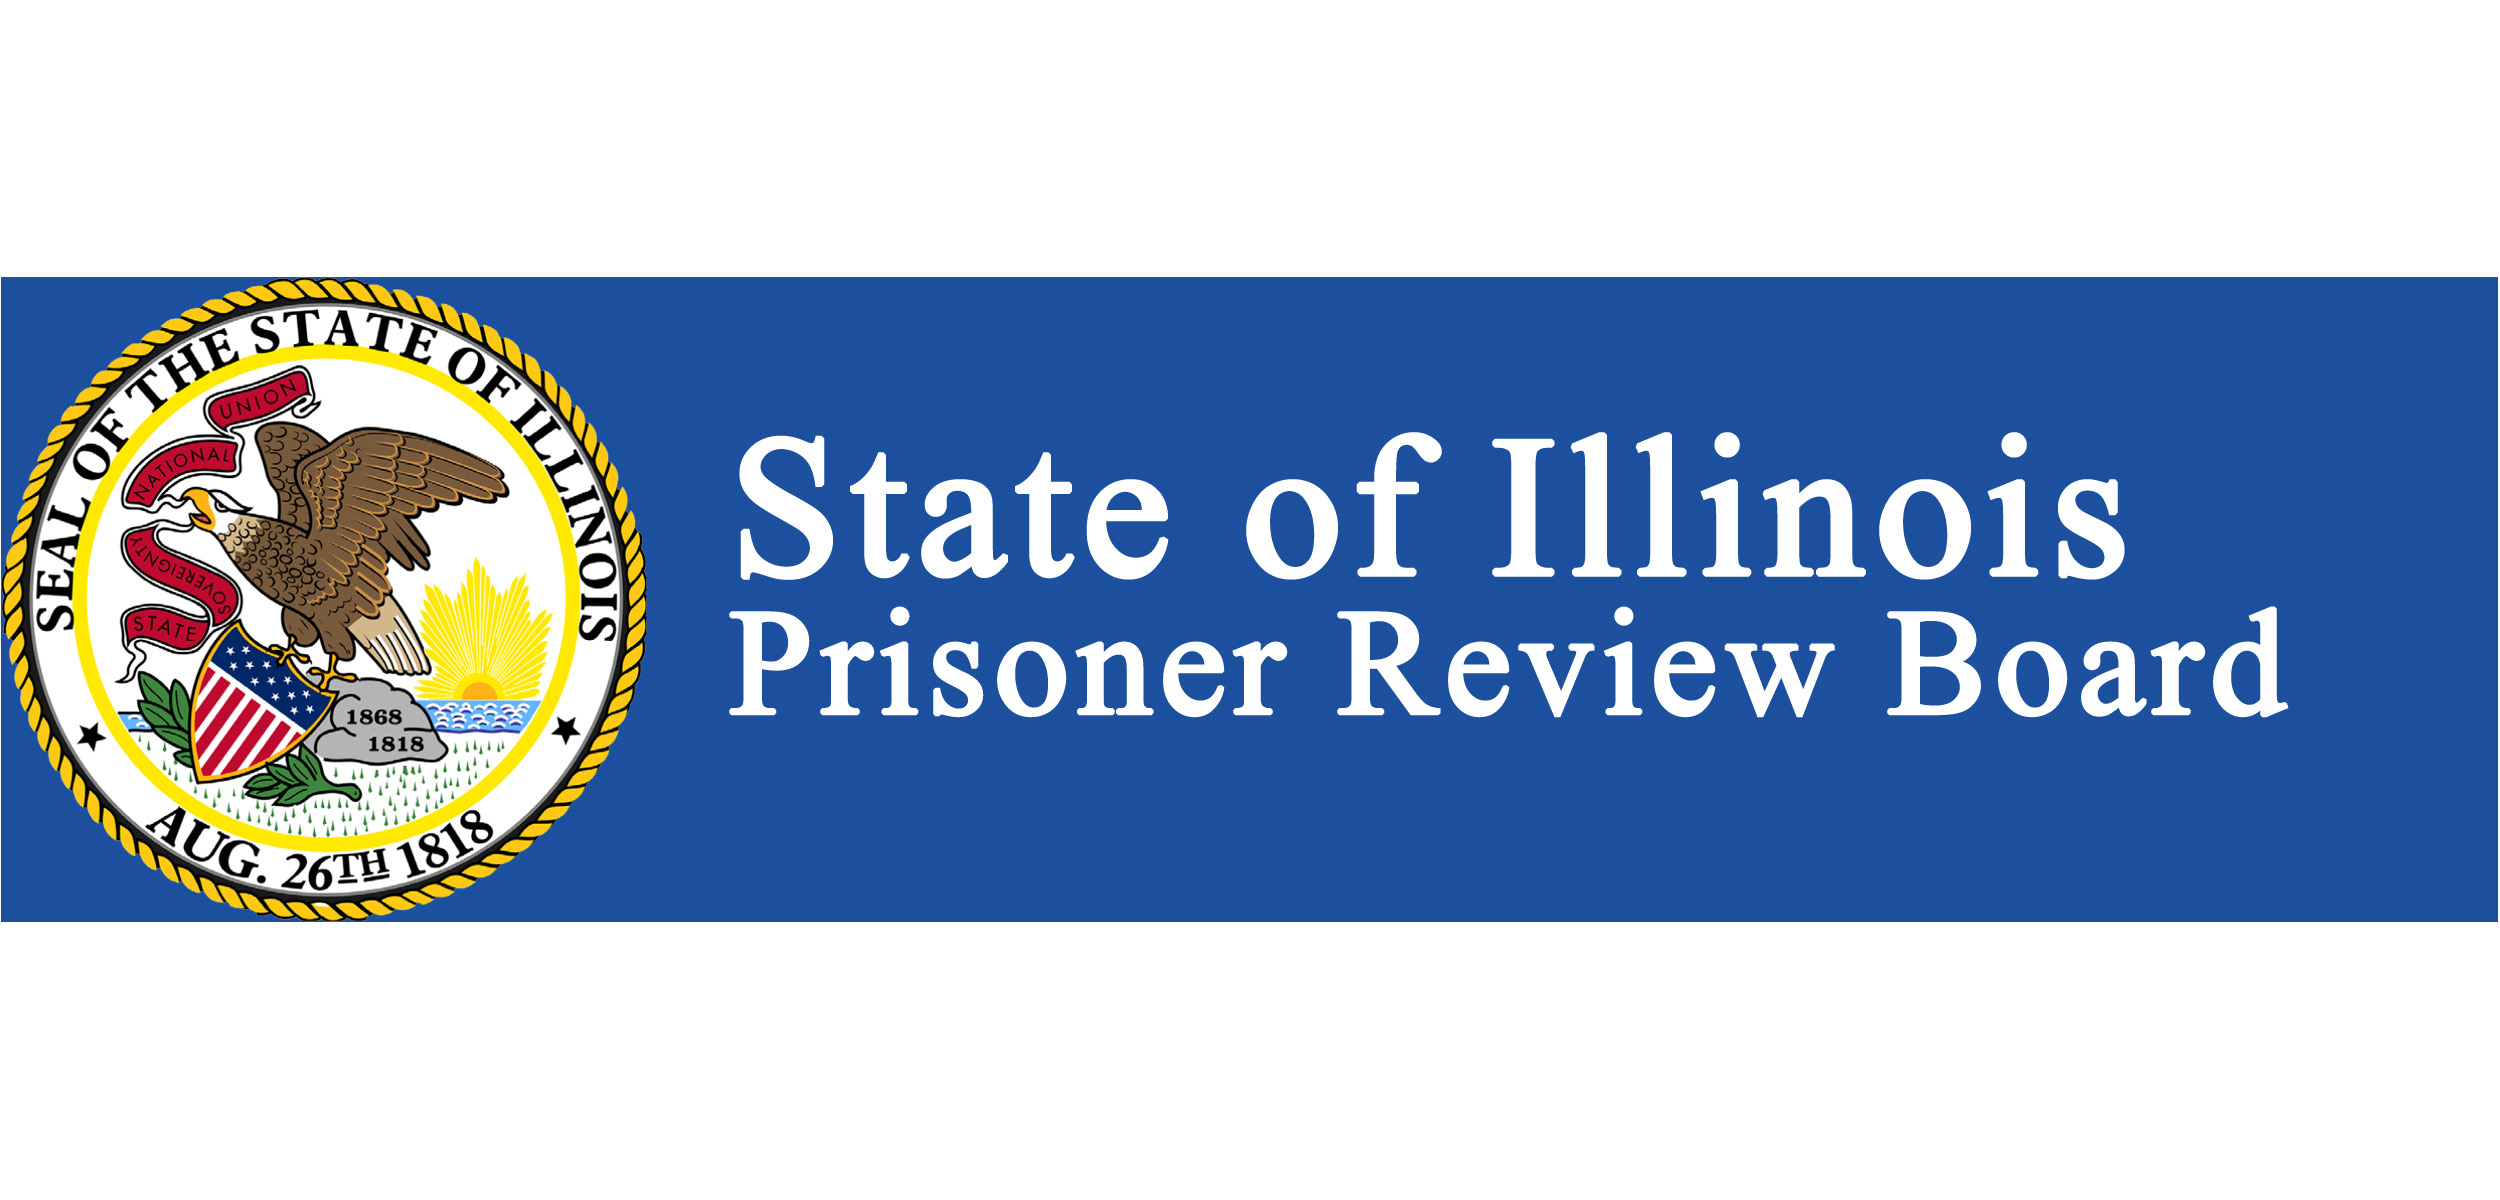 Prisoner Review Board, Illinois 